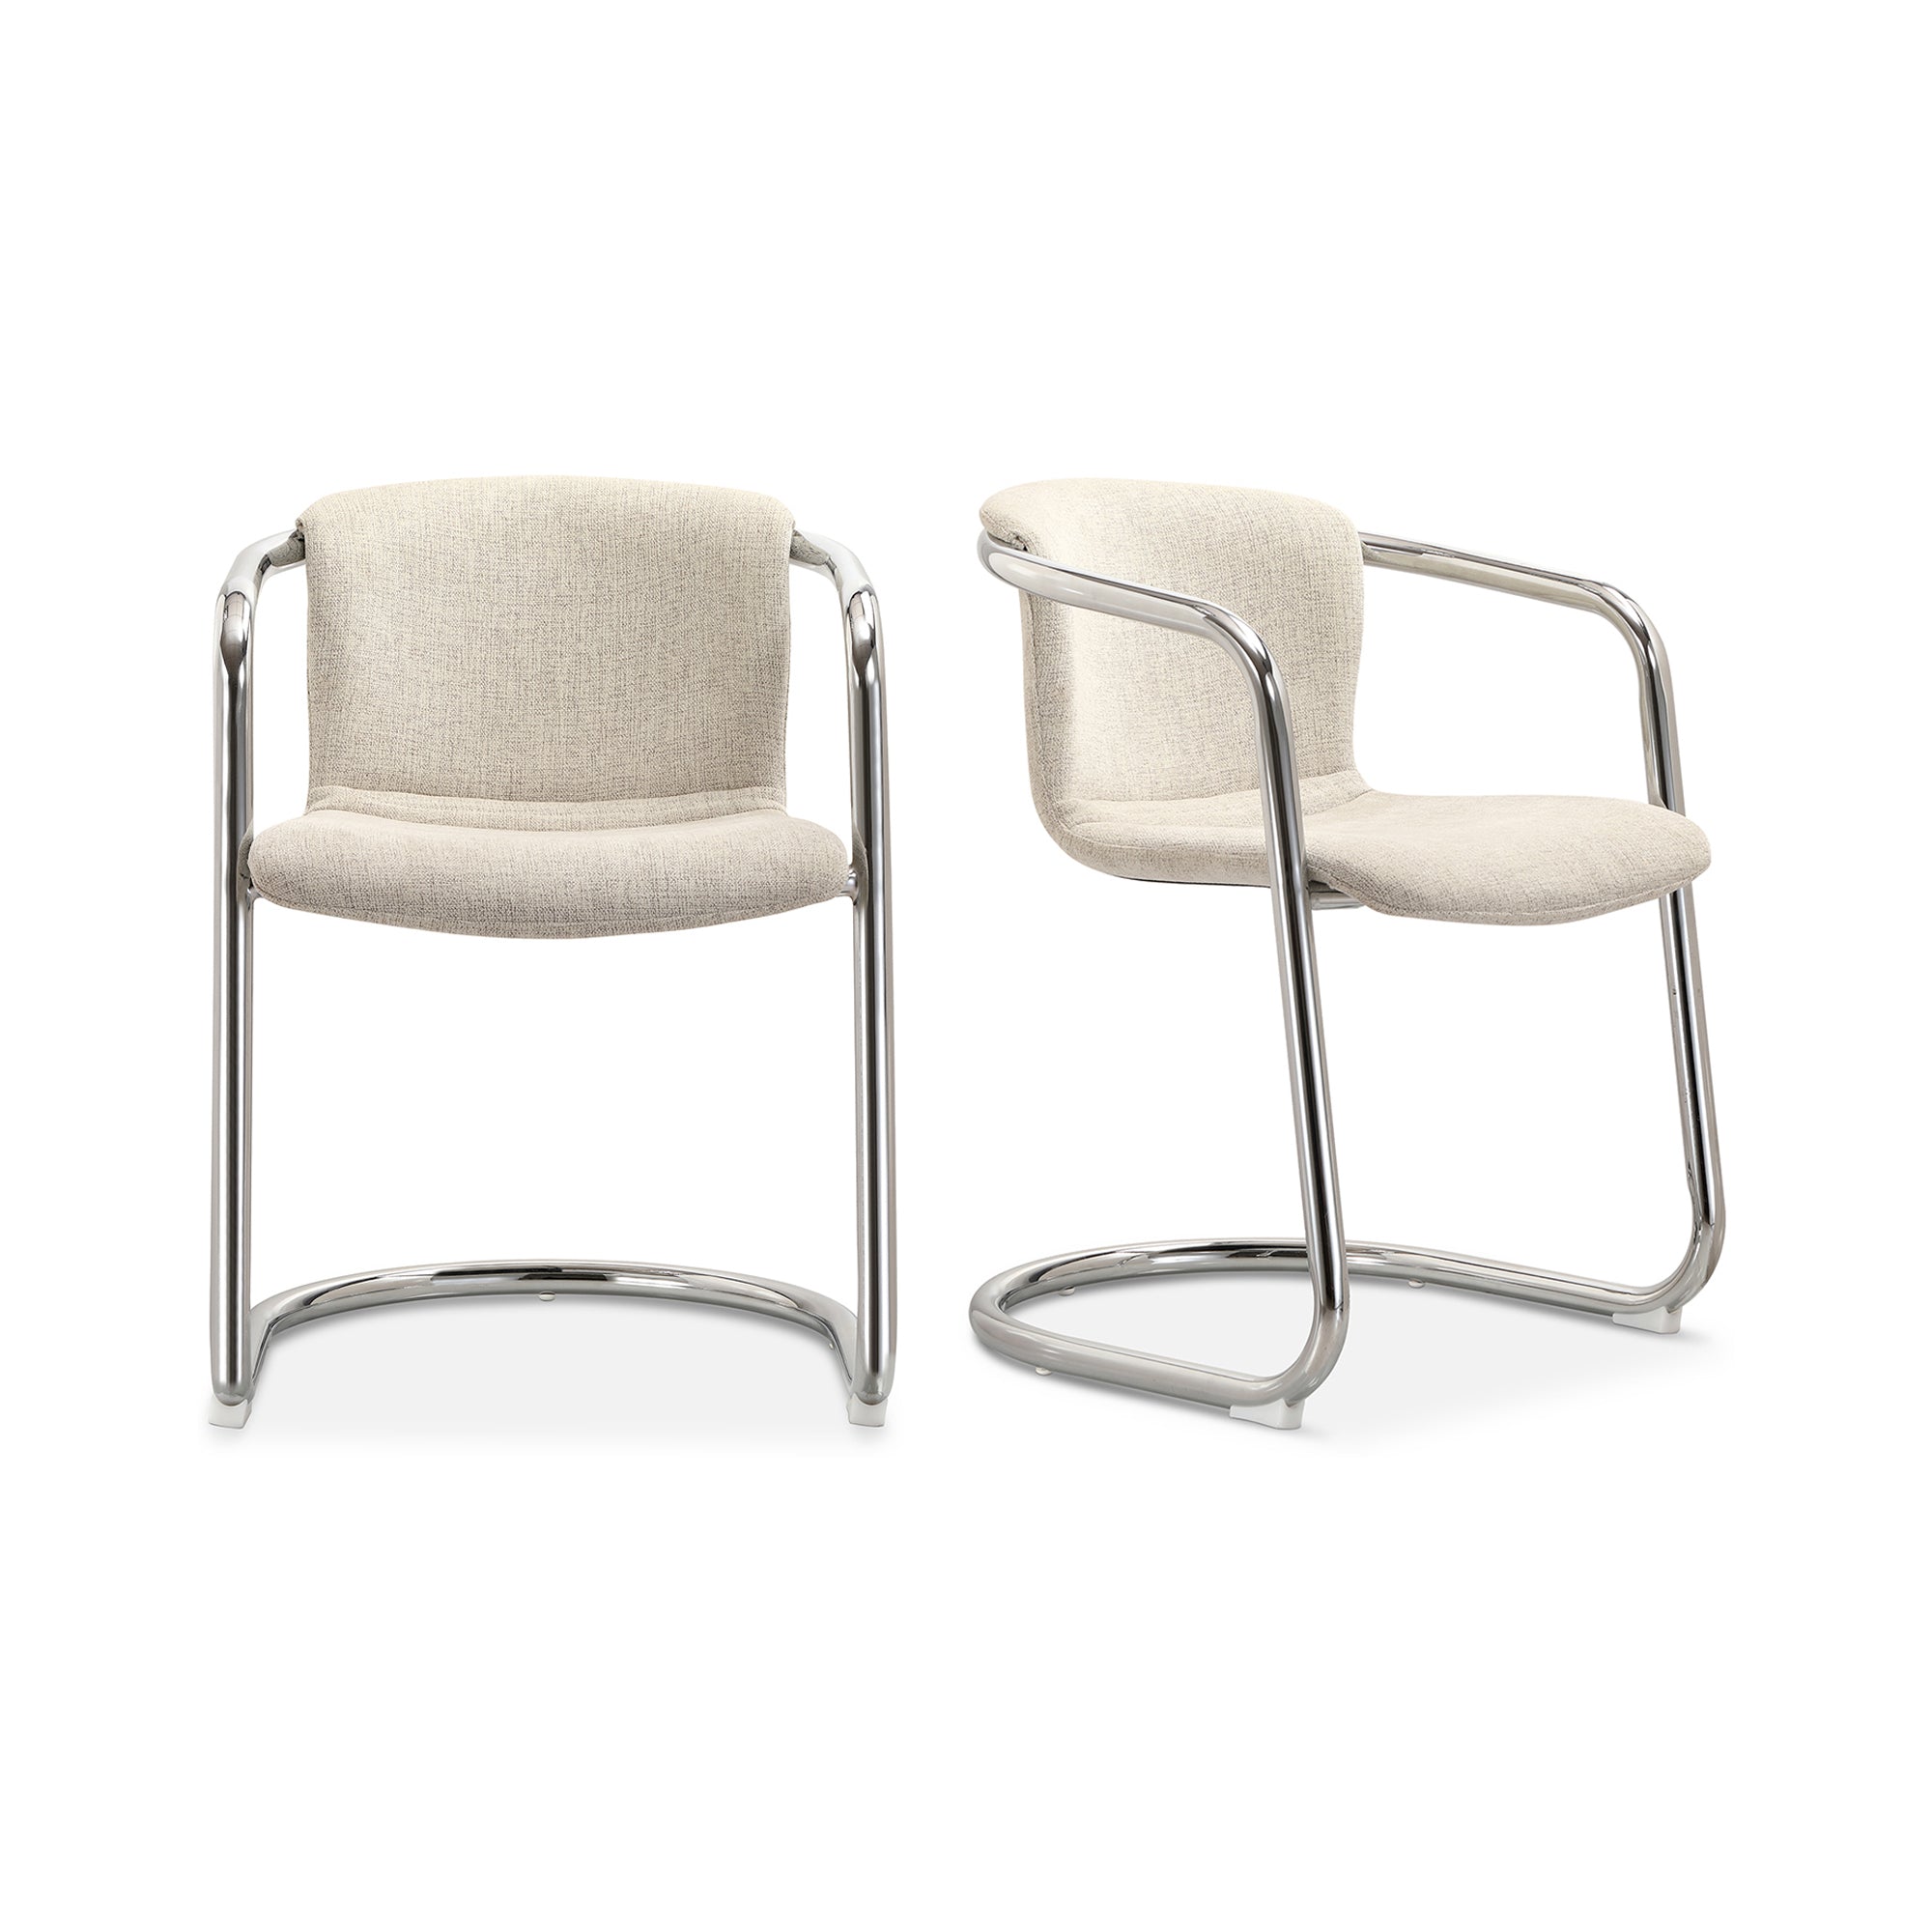 Freeman Chrome Frame Dining Chair Blended Cream - Set Of Two | White